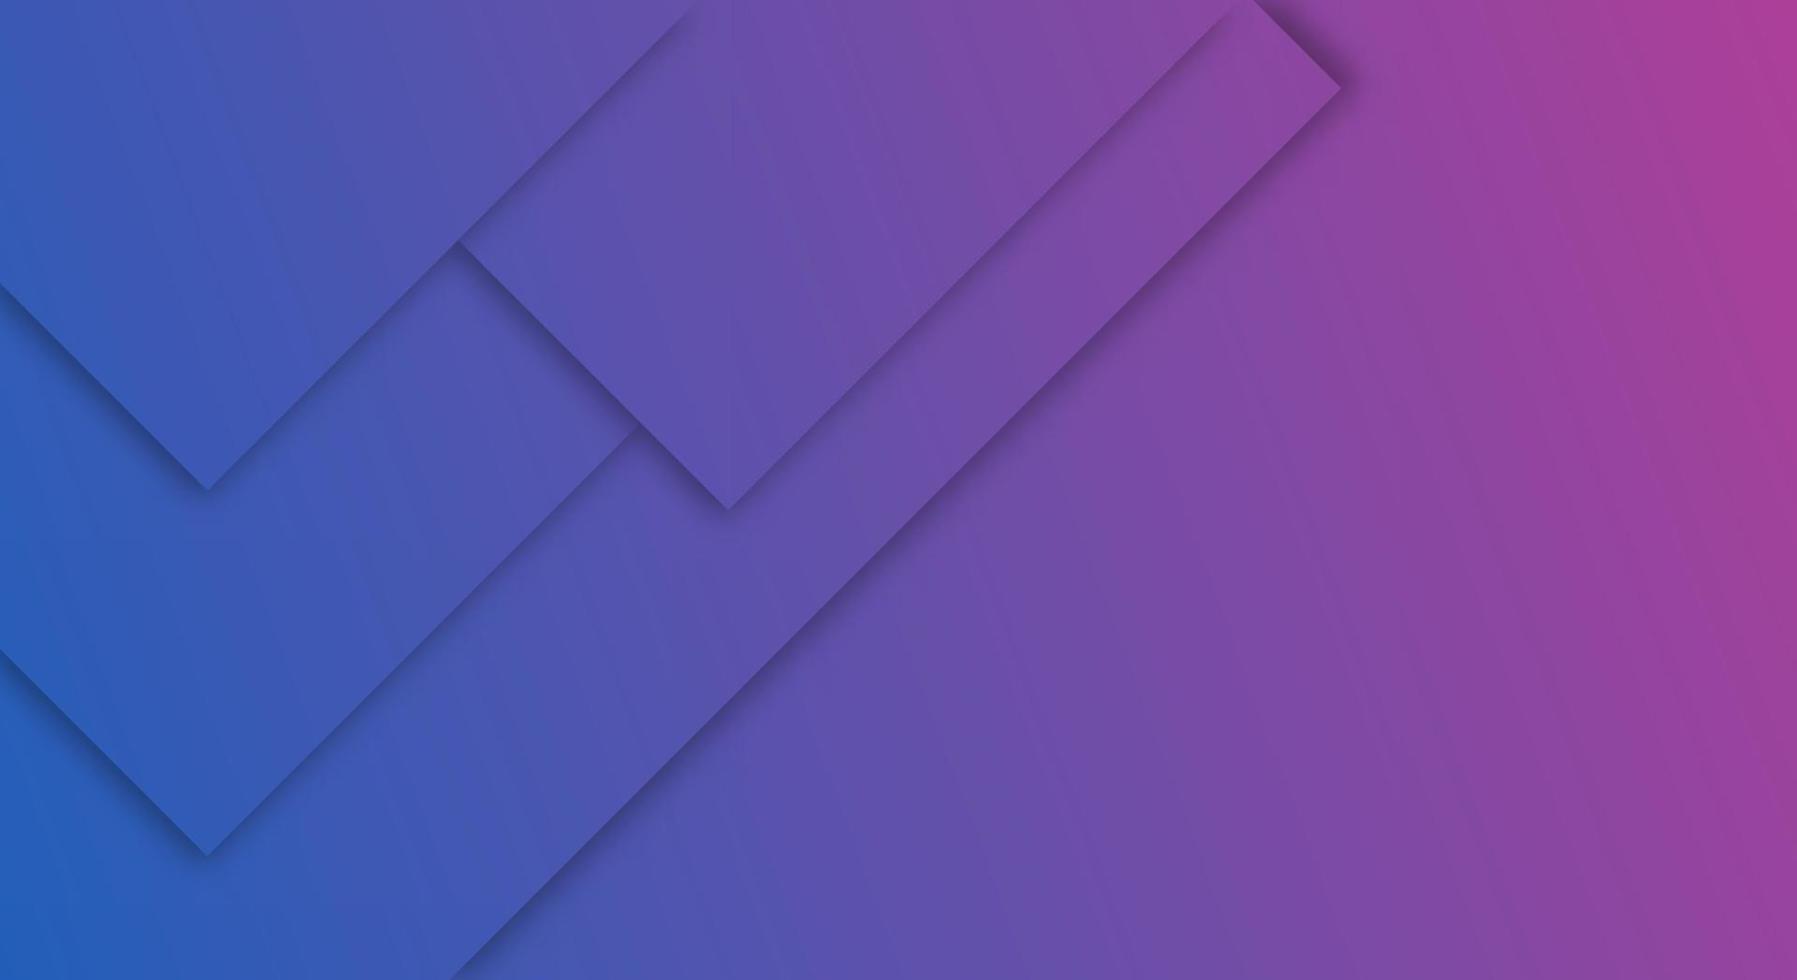 estilo de corte de papel geométrico de fondo degradado púrpura y azul abstracto para folletos o plantilla de páginas de aterrizaje vector